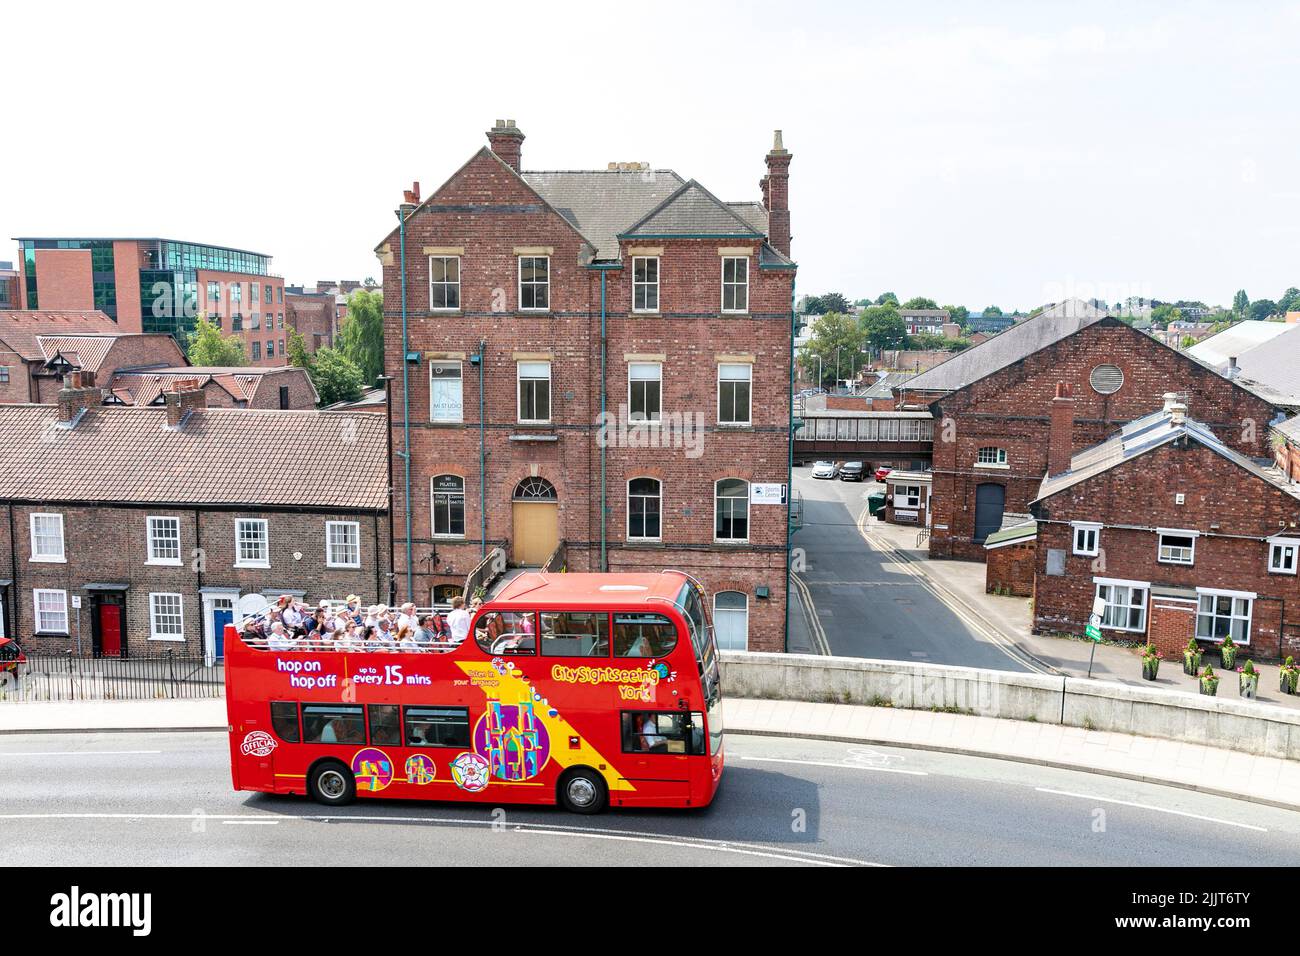 Ciudad de York, autobús turístico rojo de dos pisos conduce a los turistas y visitantes alrededor de los sitios históricos de York, Yorkshire, Inglaterra, 2022 Foto de stock